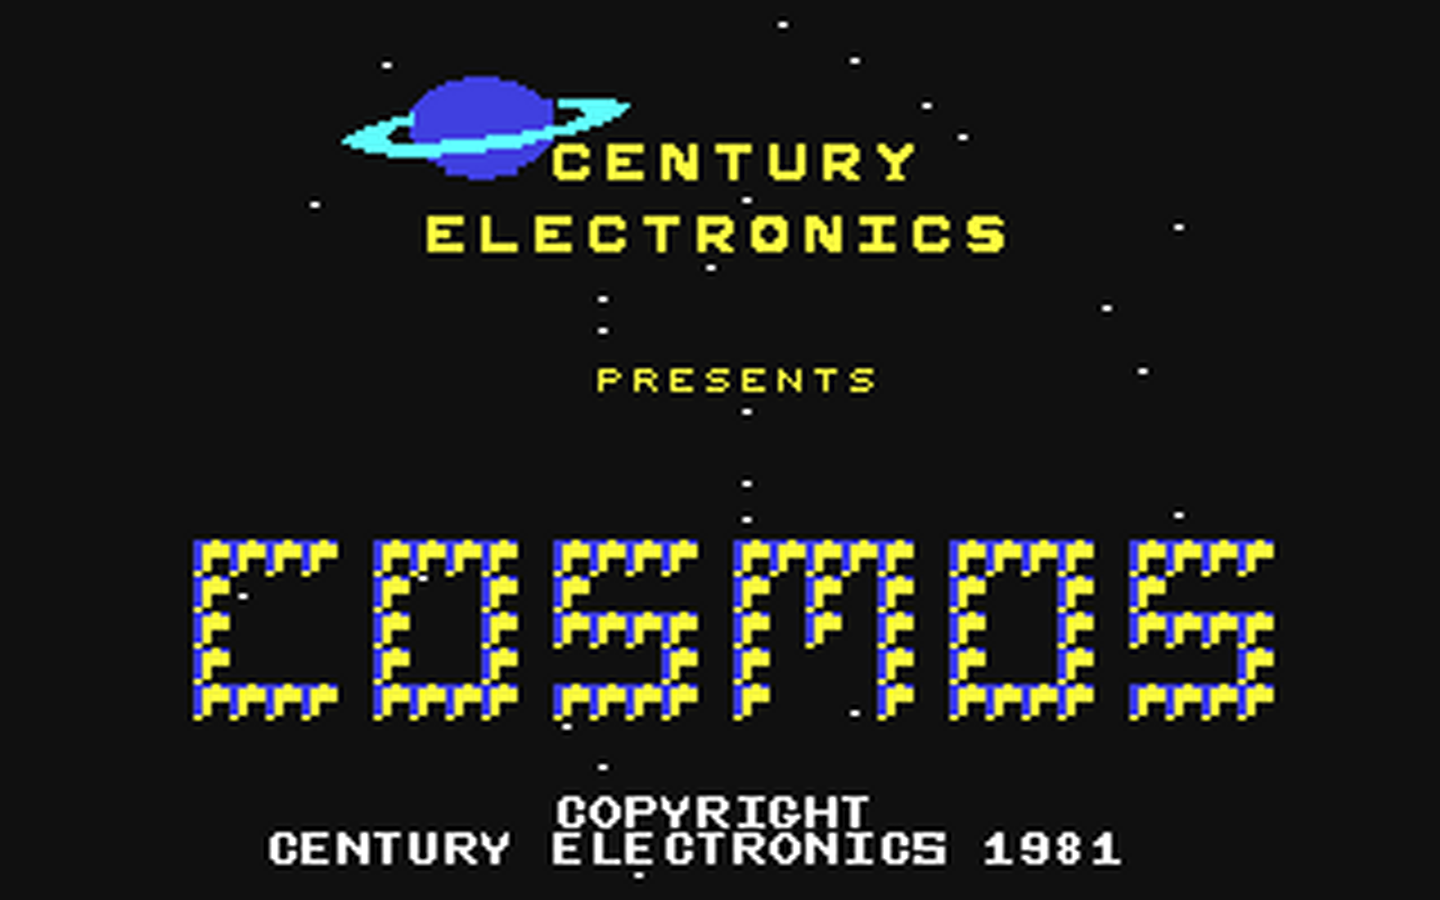 C64 GameBase Cosmos (Public_Domain) 2014